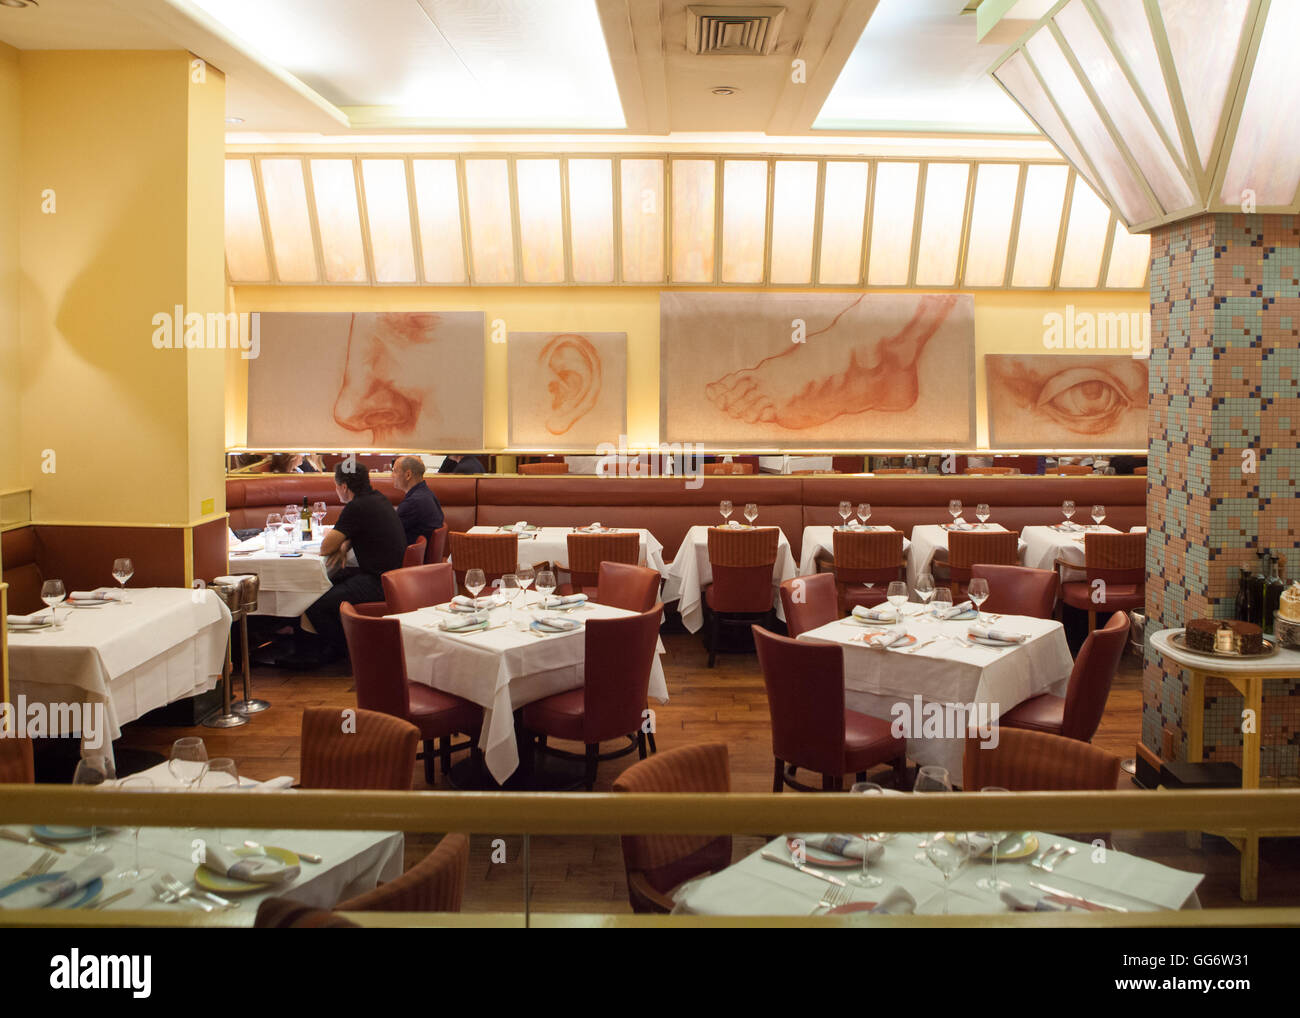 Trattoria  Dell' Arte  Restaurant in New York,USA. Stock Photo